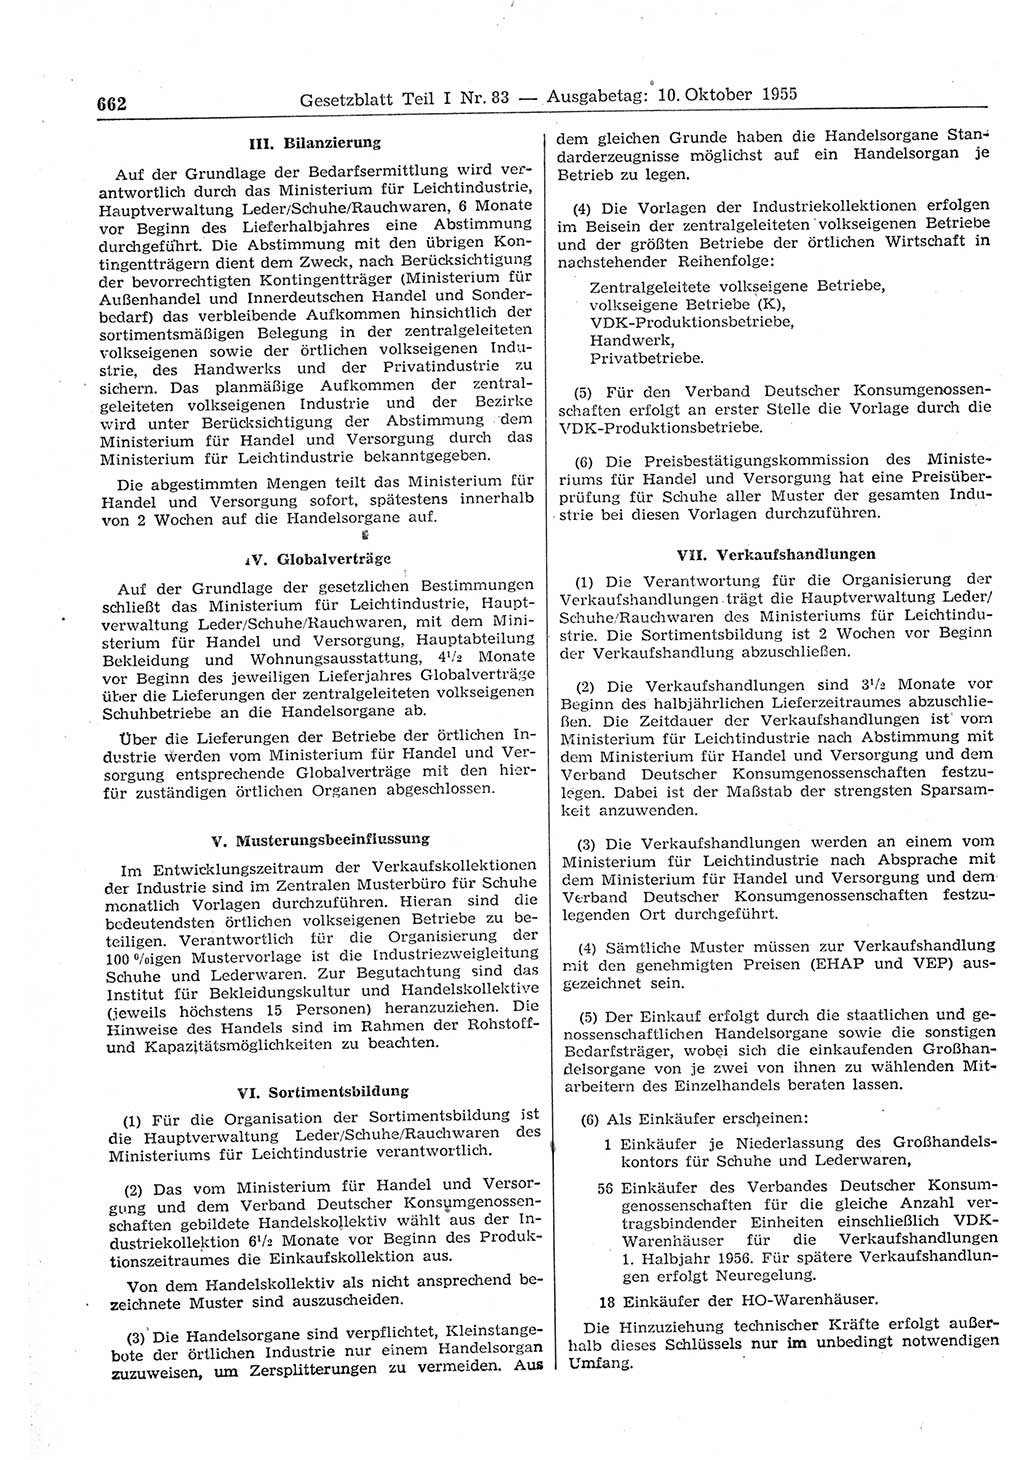 Gesetzblatt (GBl.) der Deutschen Demokratischen Republik (DDR) Teil Ⅰ 1955, Seite 662 (GBl. DDR Ⅰ 1955, S. 662)